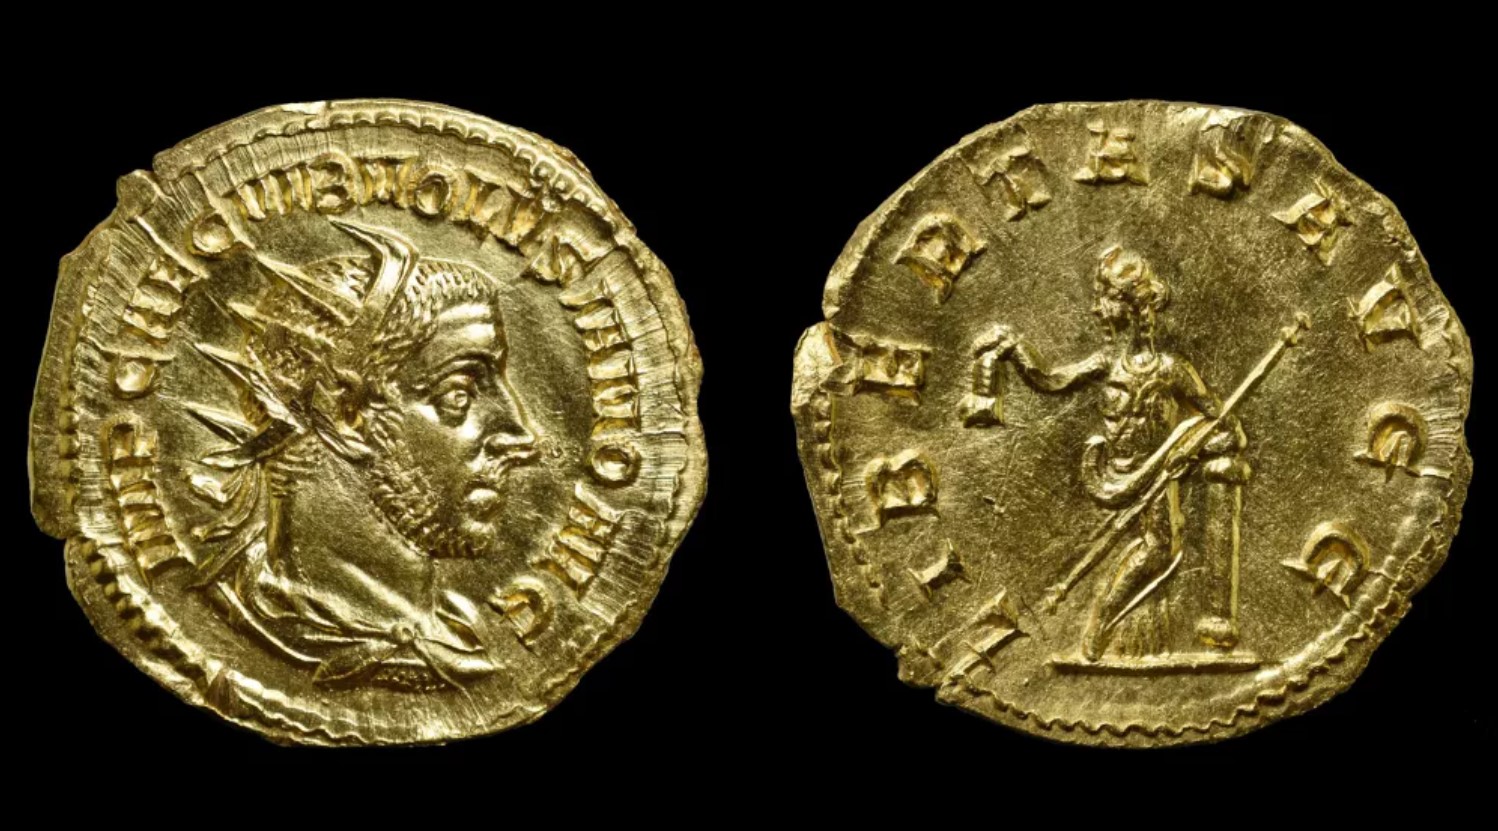 Kooperierender Detektiv findet extrem seltene römische Goldmünze aus dem 3. Jahrhundert